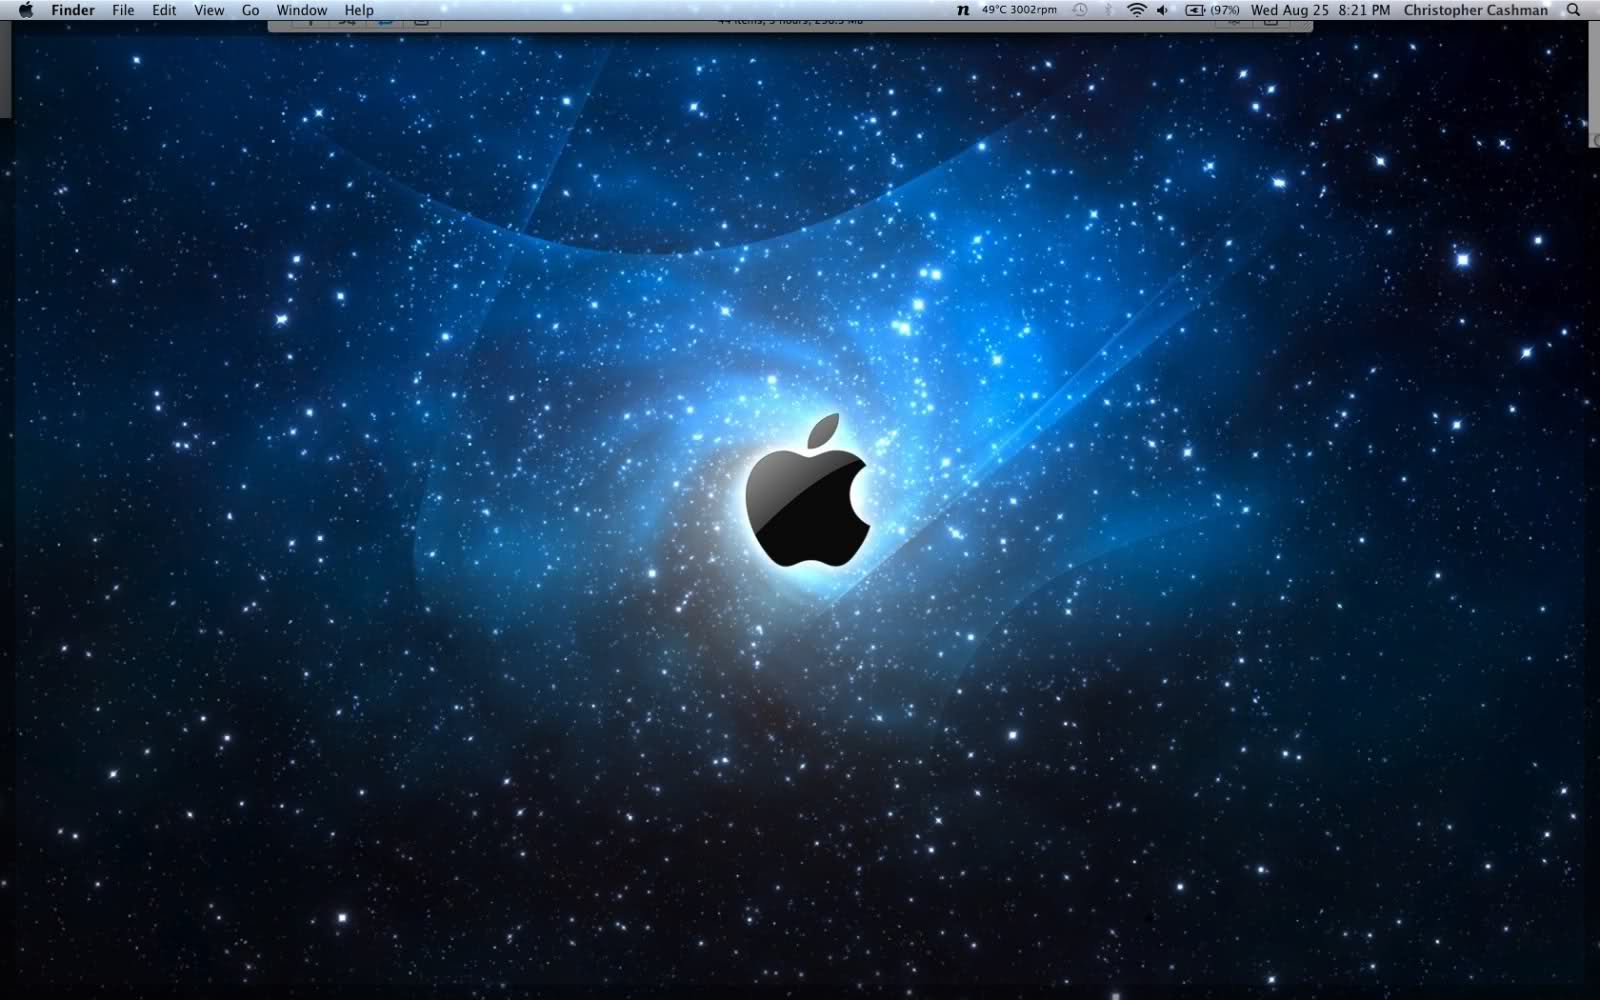 Post Your Macbook Pro Desktop/Wallpapers! | MacRumors Forums